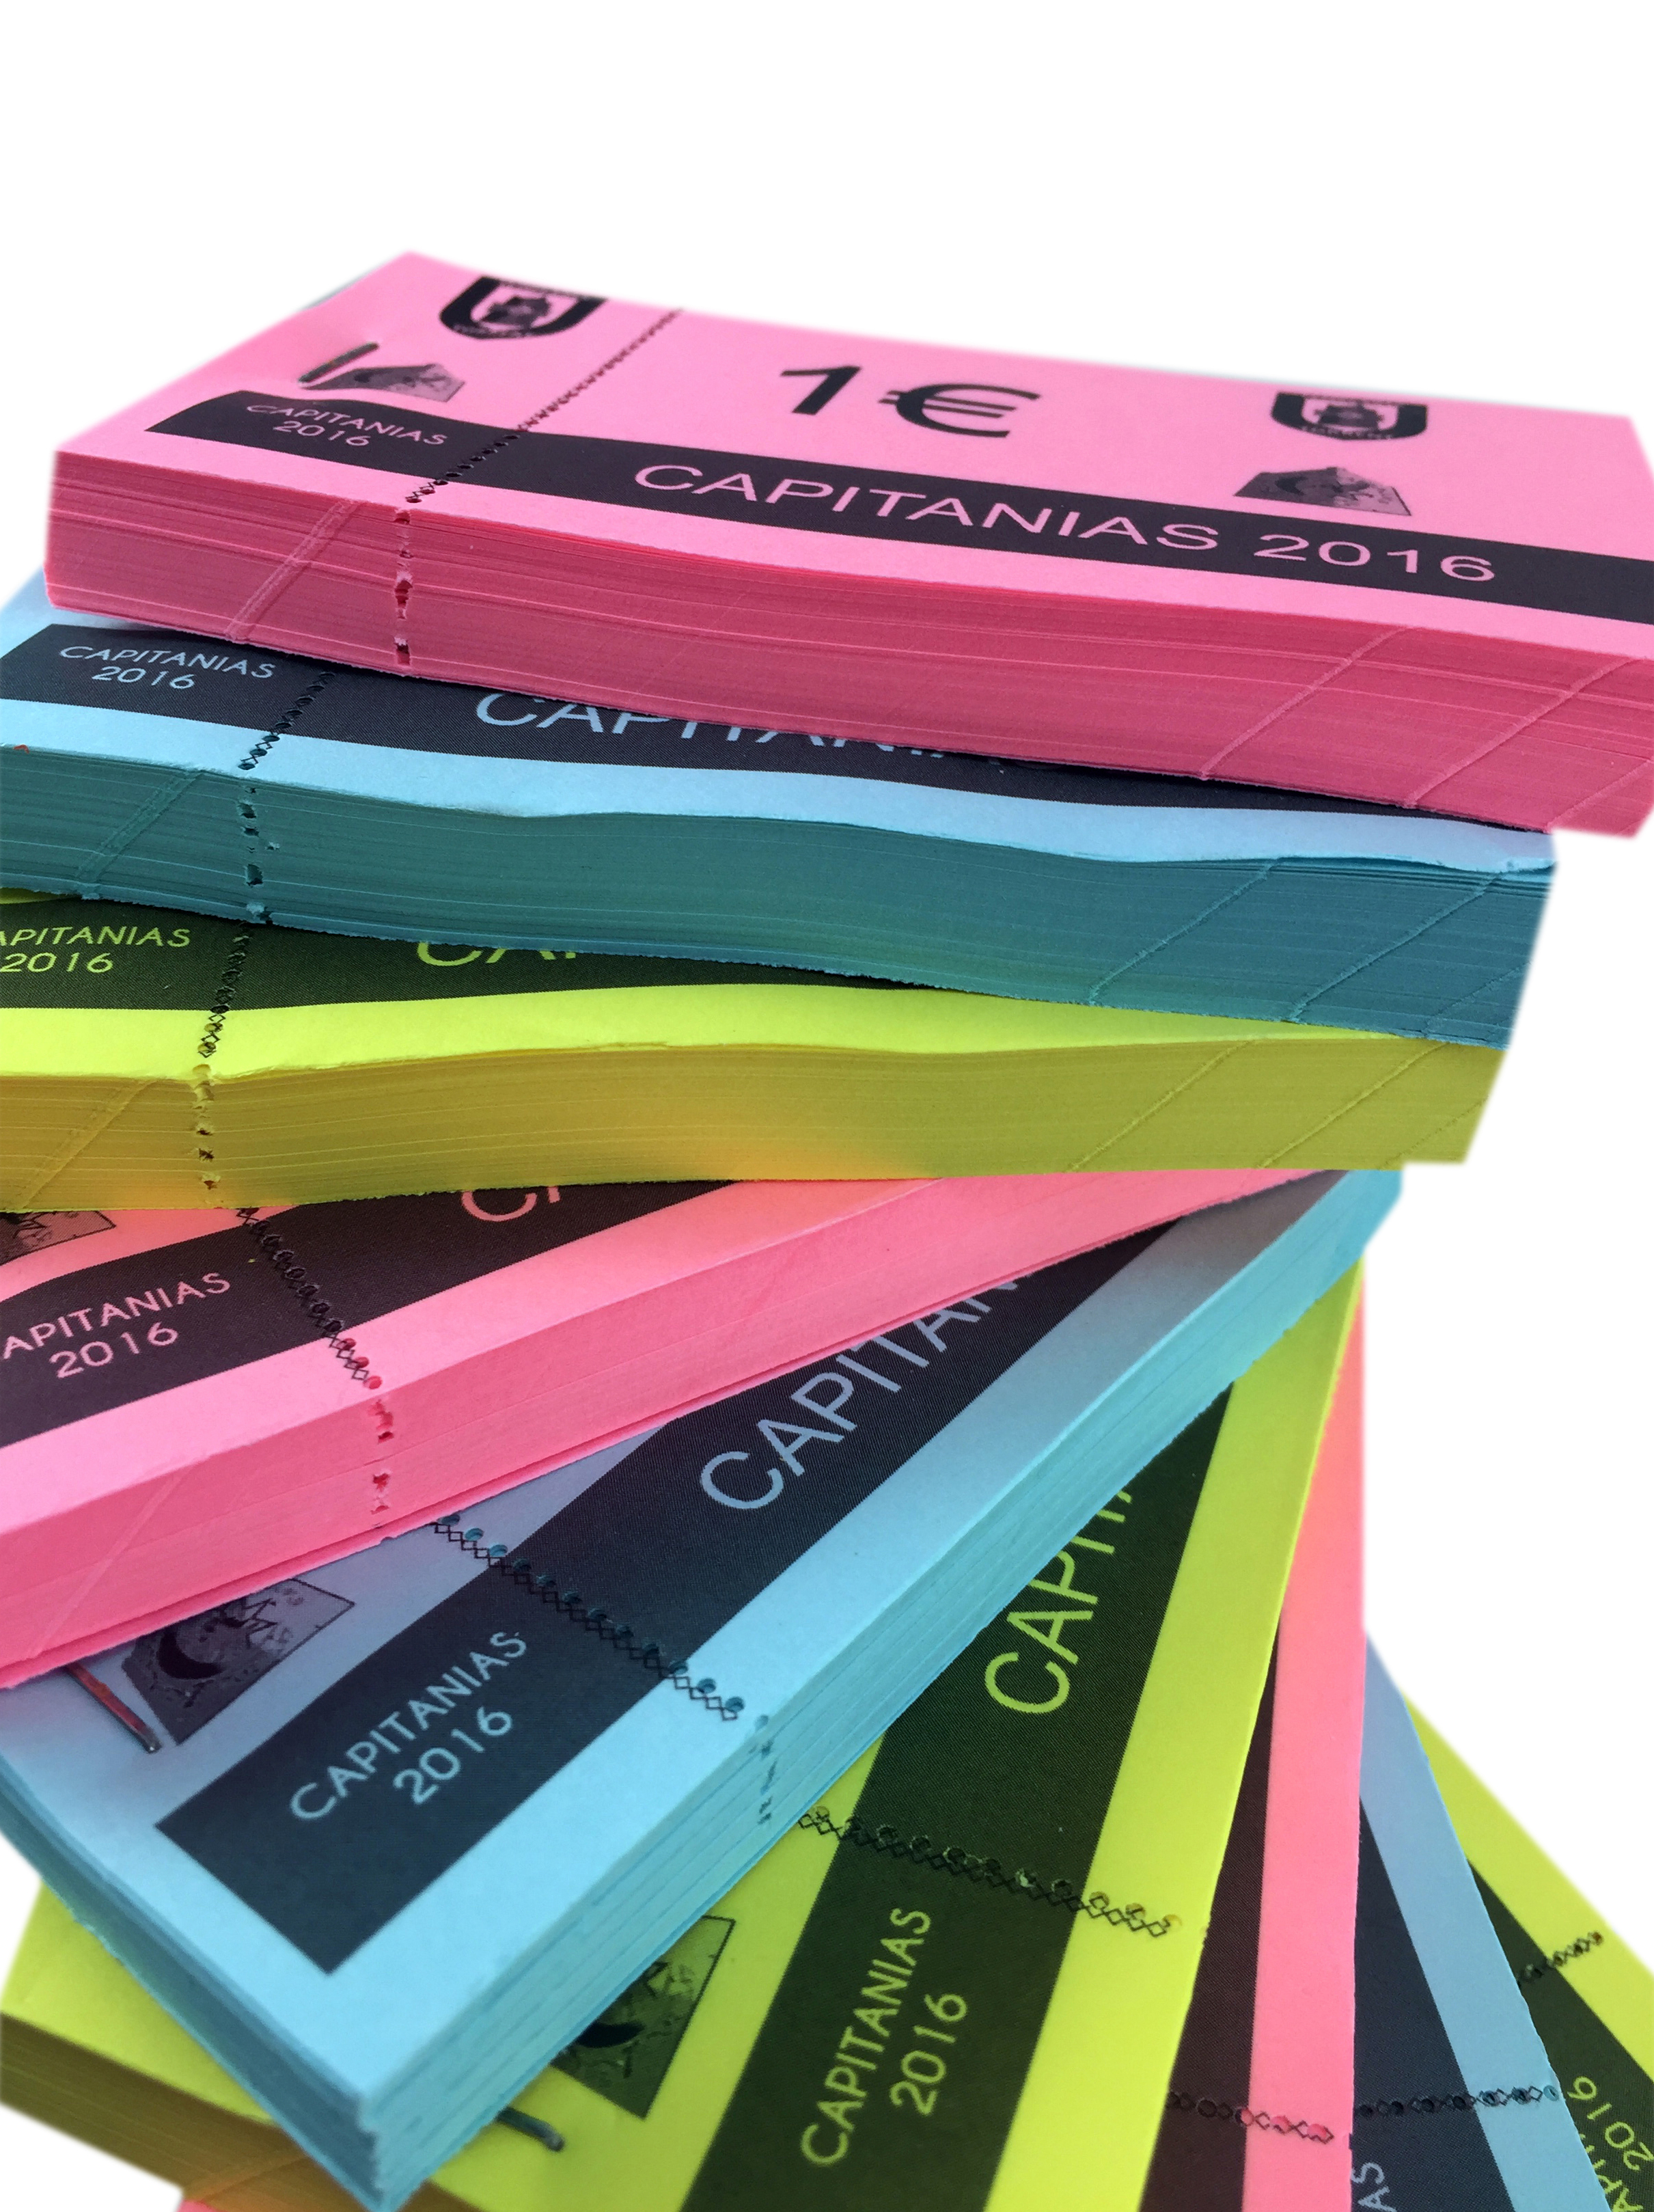 Tickets en Papel de Colores con Matriz - TURIAPRINT IMPRENTA - Imprenta  Online - Impresión Digital y Offset